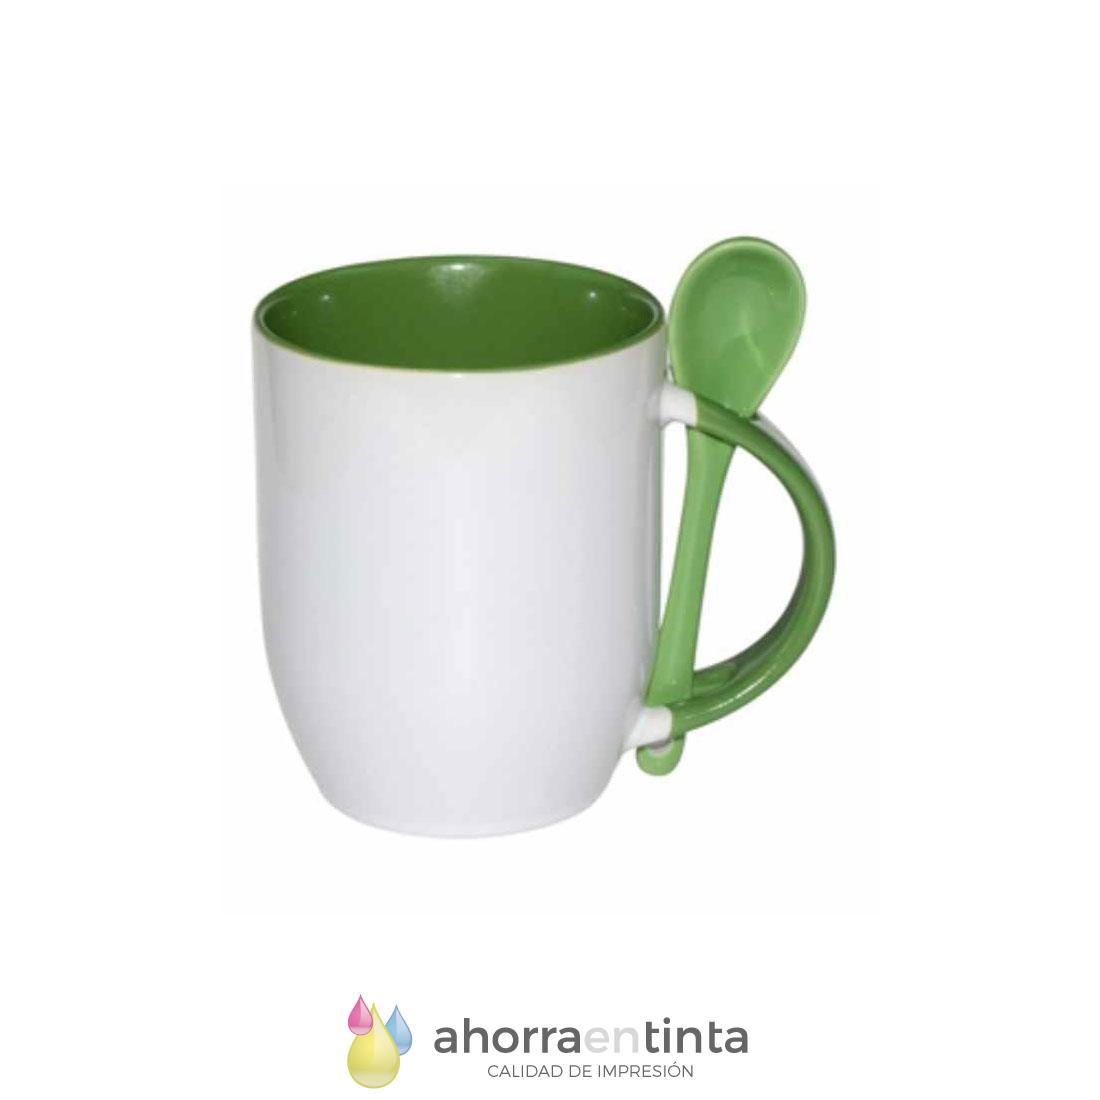 Foto de producto Taza de cerámica color verde con cucharilla